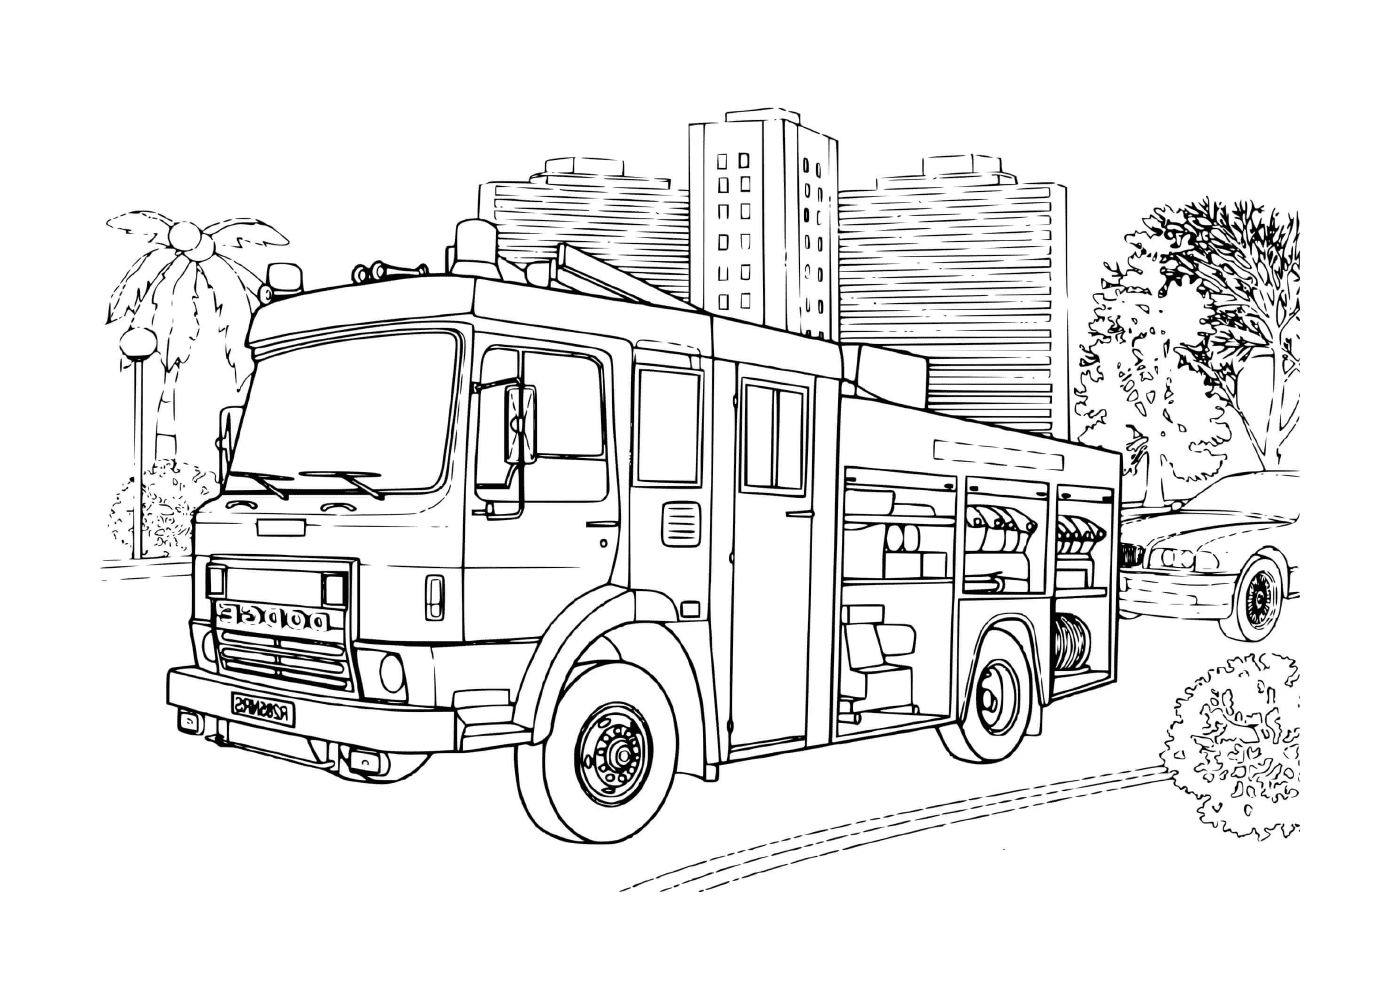   un camion de pompier de marque Dodge 